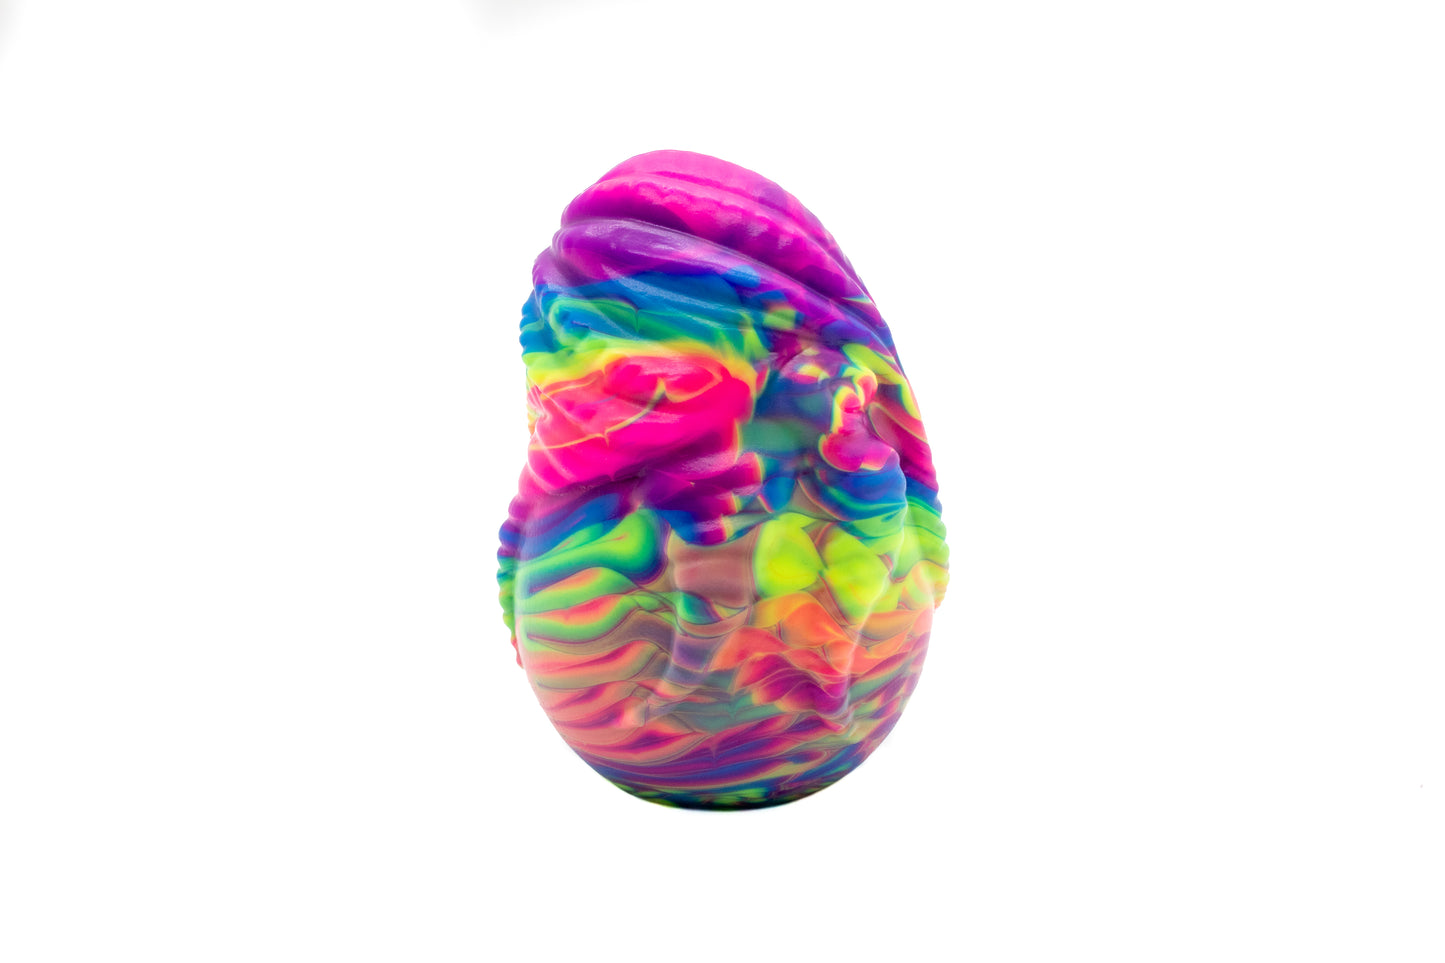 Predator Egg (1)